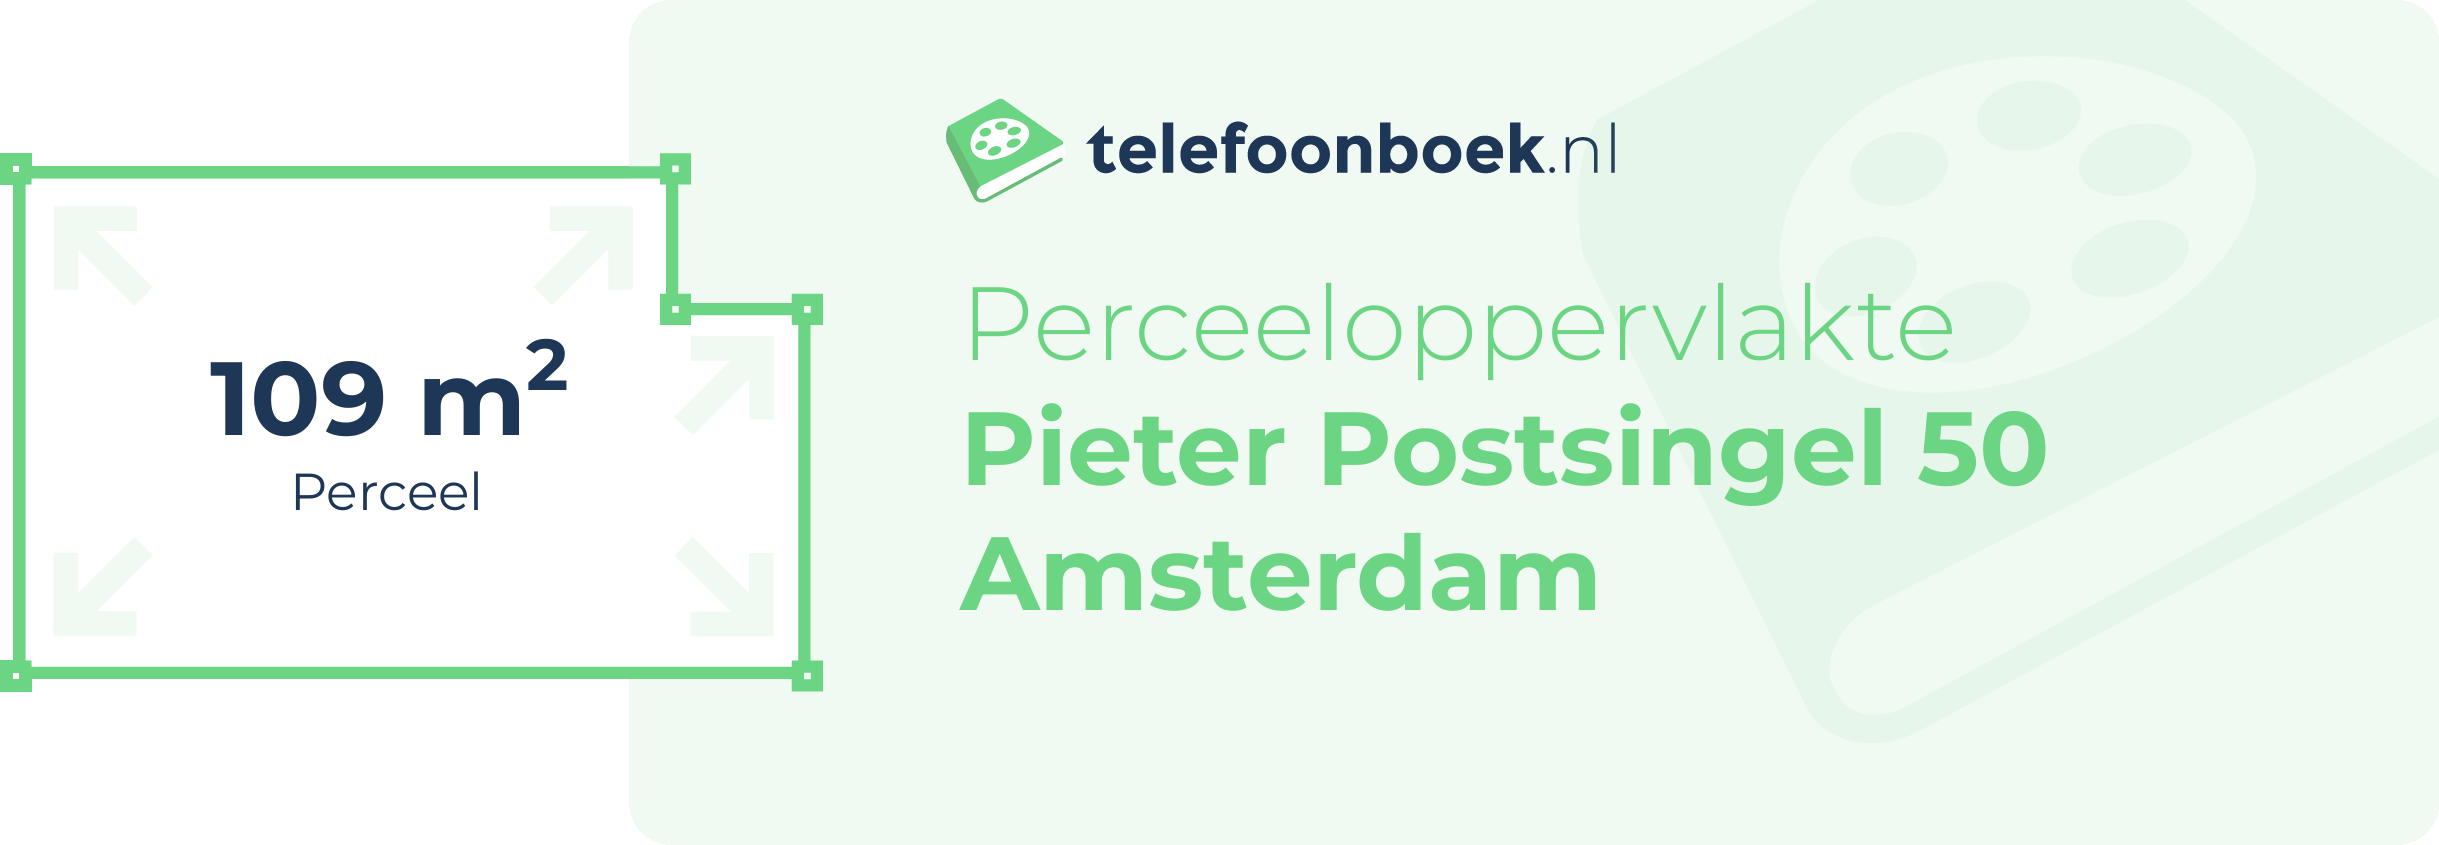 Perceeloppervlakte Pieter Postsingel 50 Amsterdam